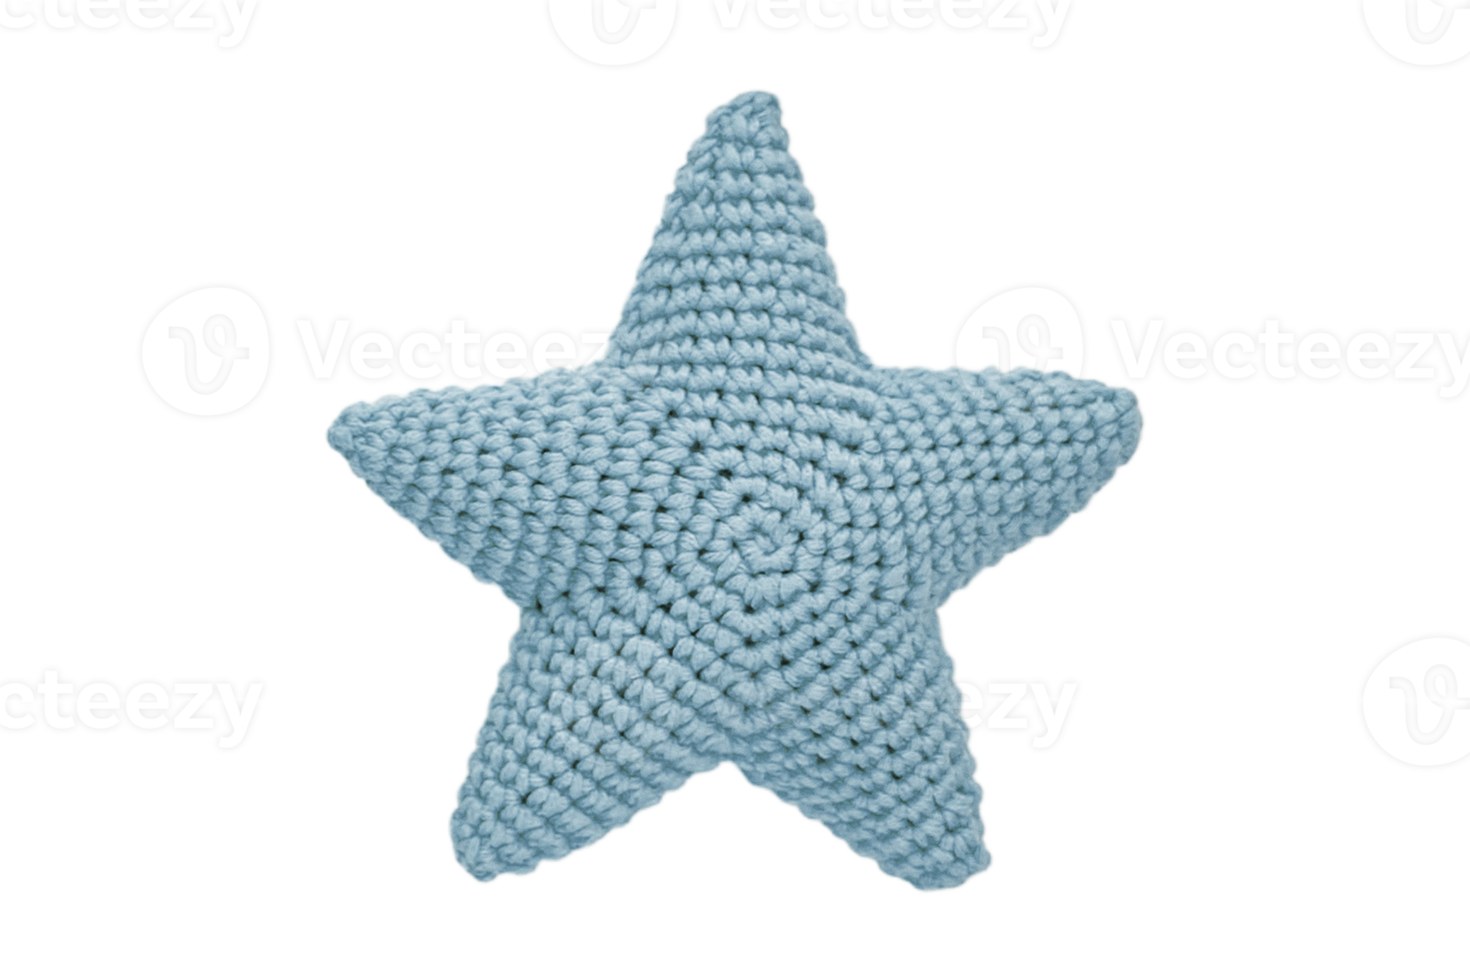 Blau Star Kissen isoliert auf ein transparent Hintergrund png